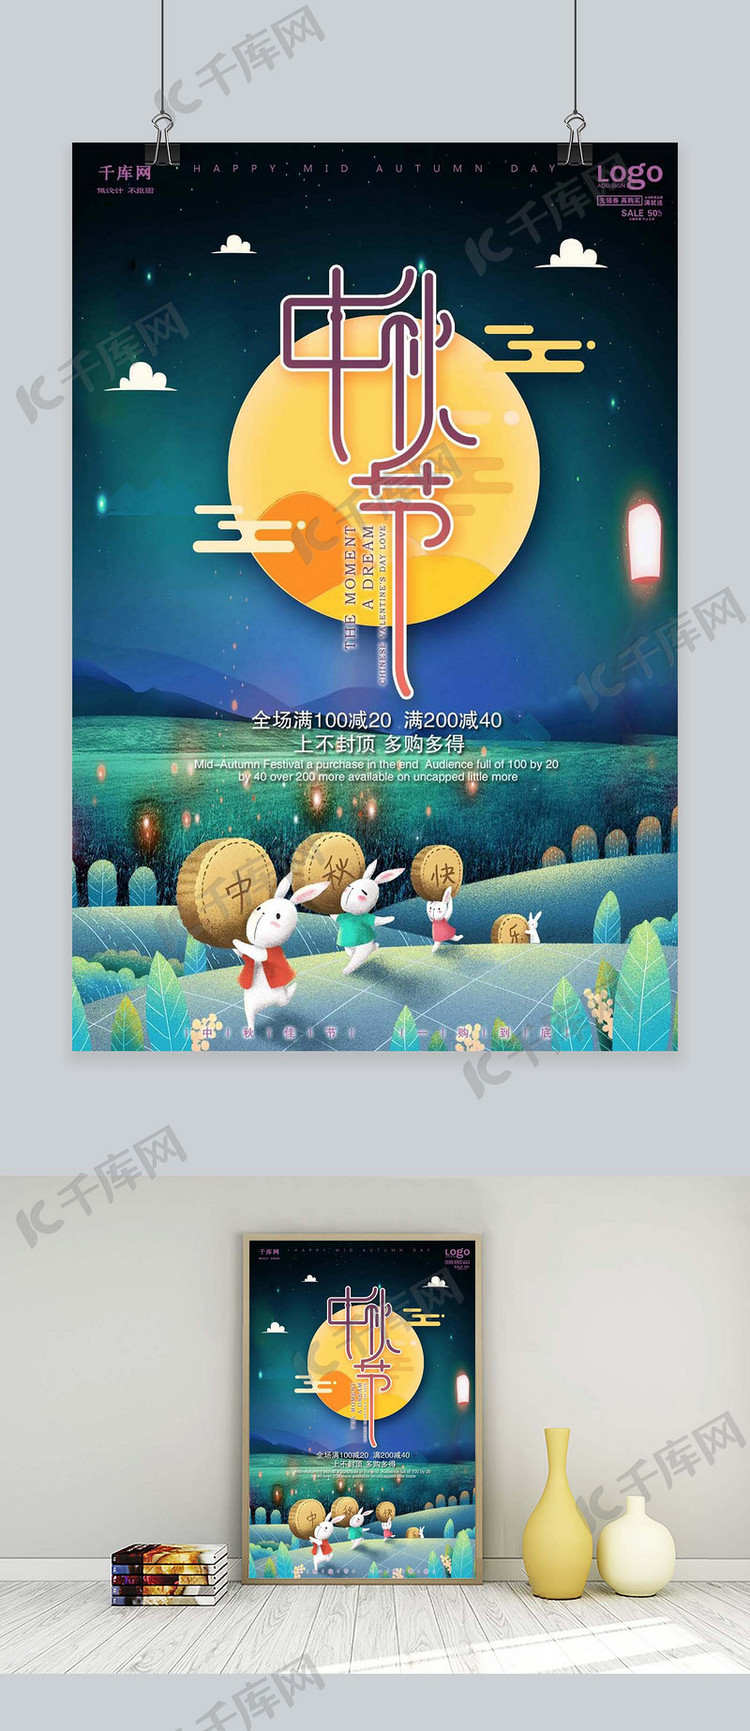 千库原创中秋节团圆相伴月饼促销唯美插画风格海报